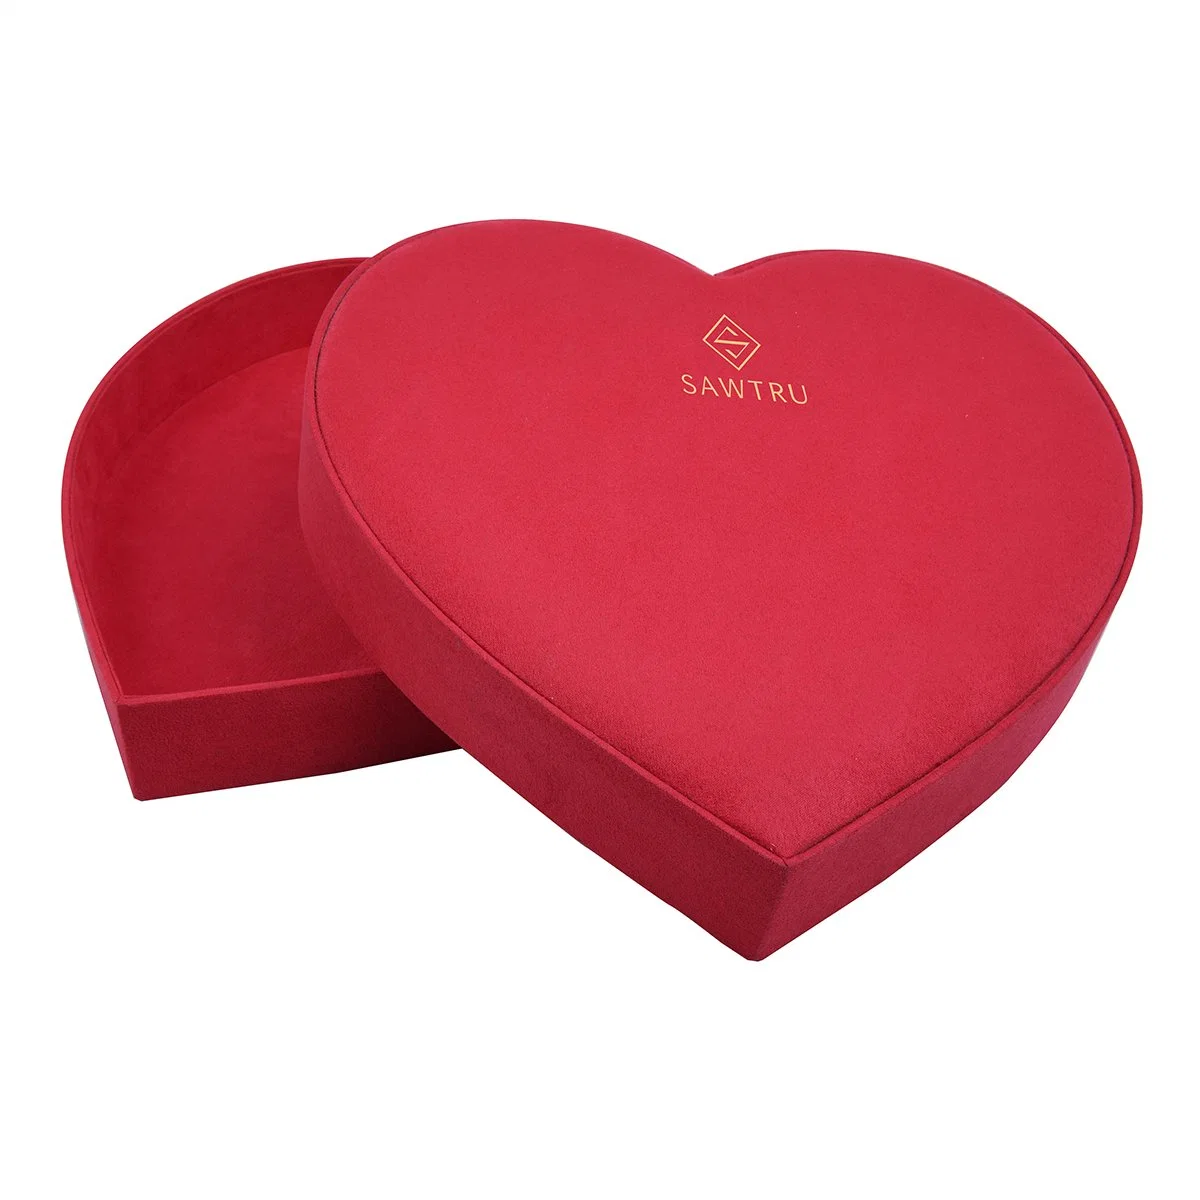 Größe 29 * 31 * 6cm große Herzform Karton Verpackung Box für Valentinstag Geschenkverpackung Für Den Tag